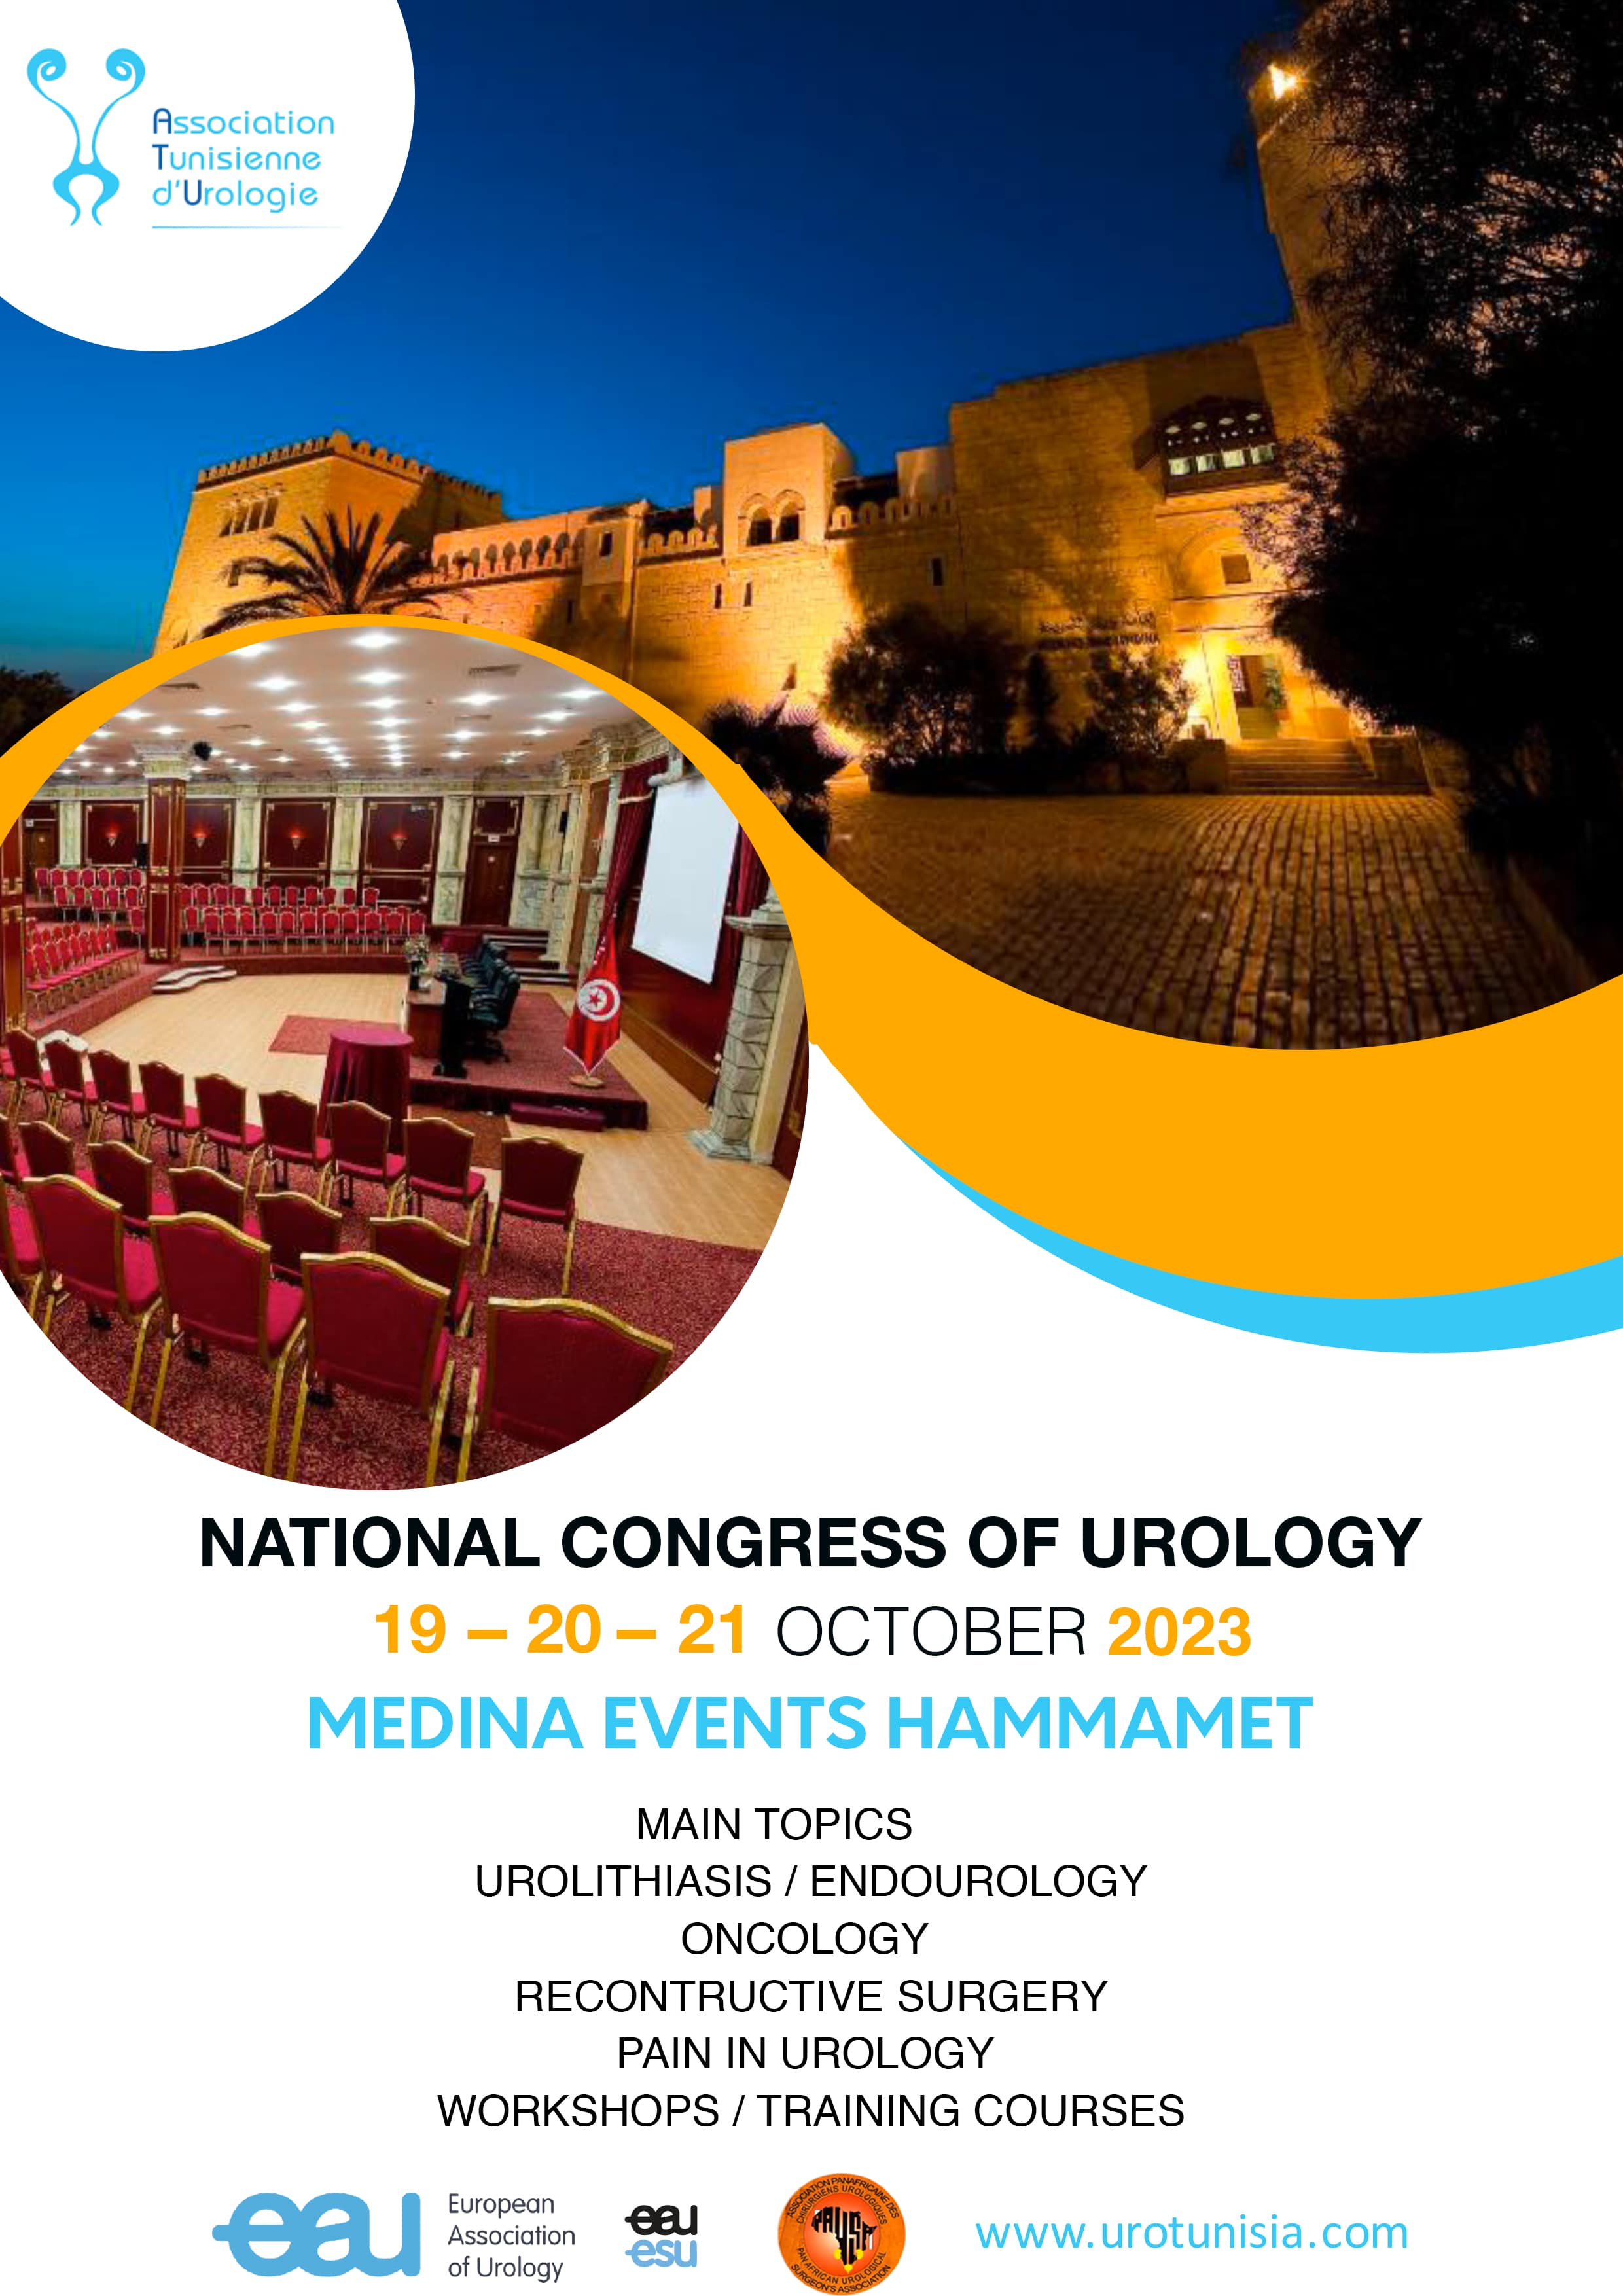 23 ème congrès de l'association tunisienne d'urologie